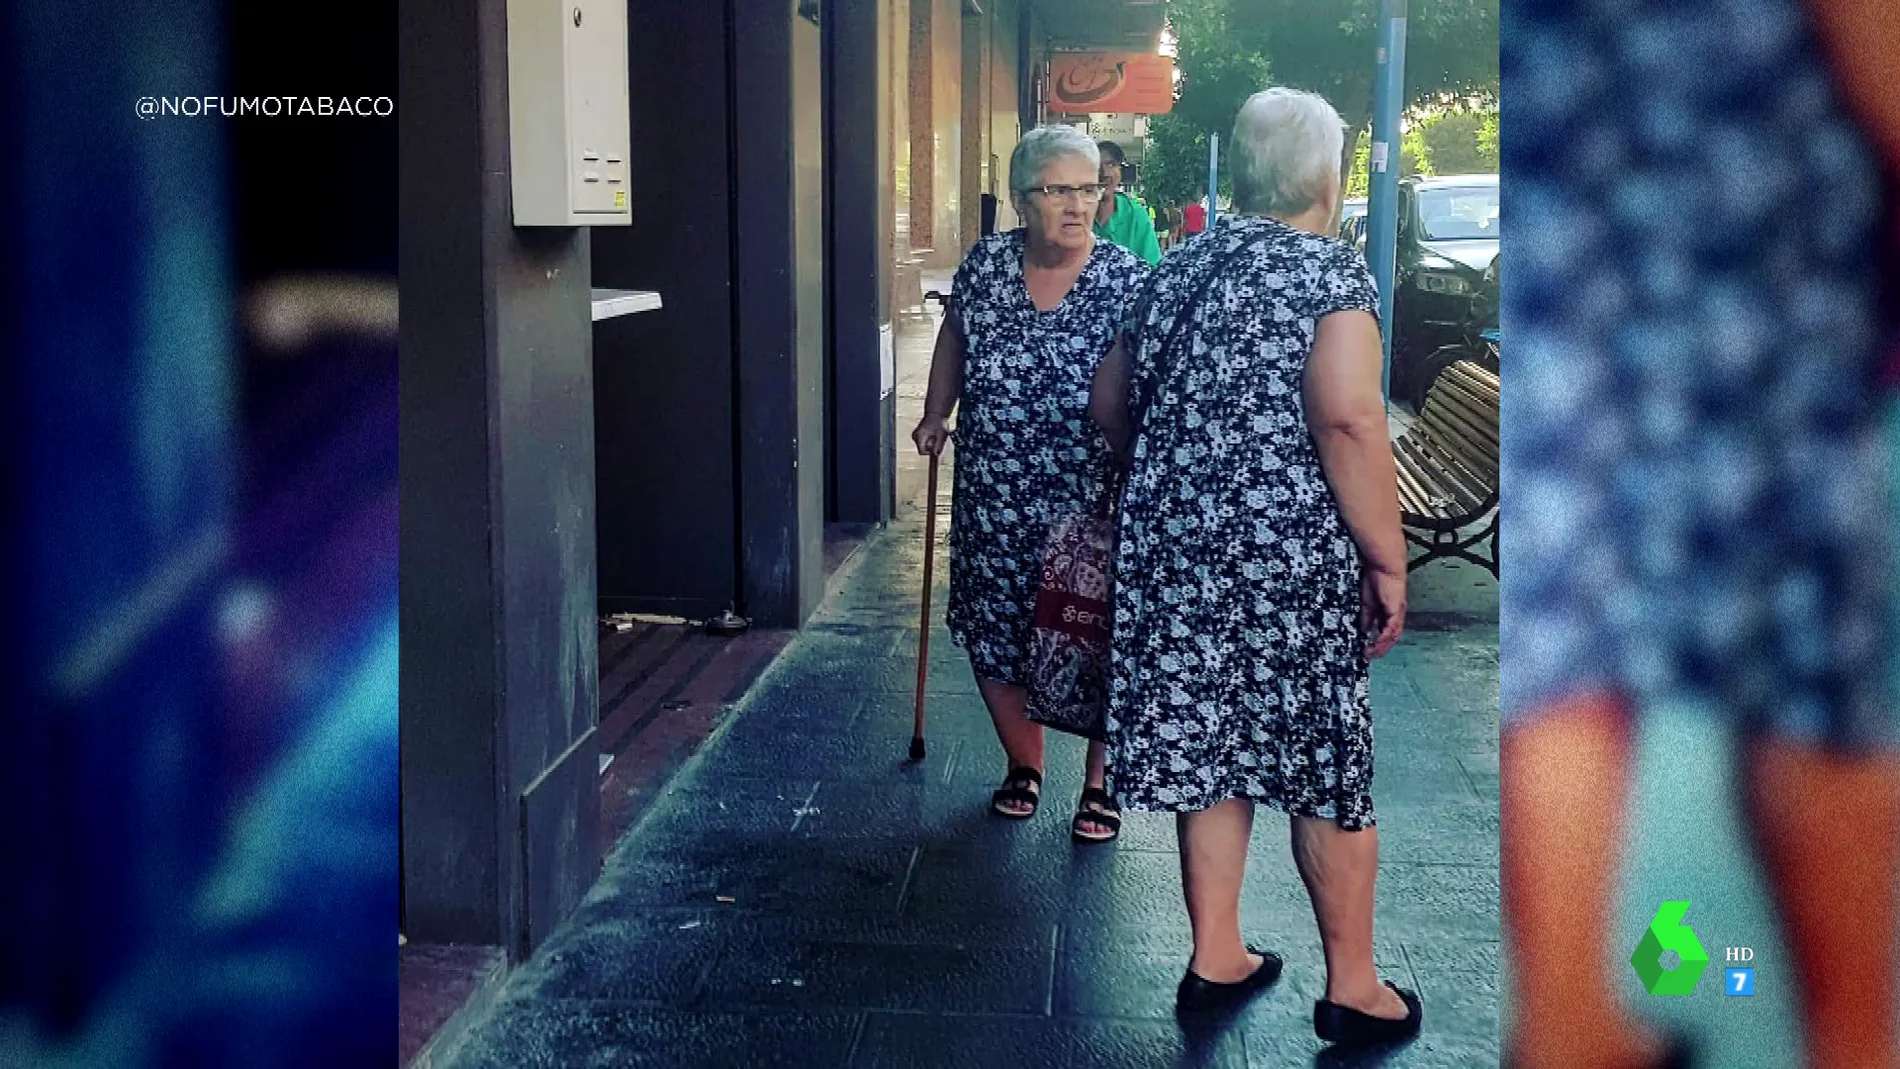 La sorprendente imagen viral de dos señoras que se encuentran con "su doble": "Un fallo en Matrix"